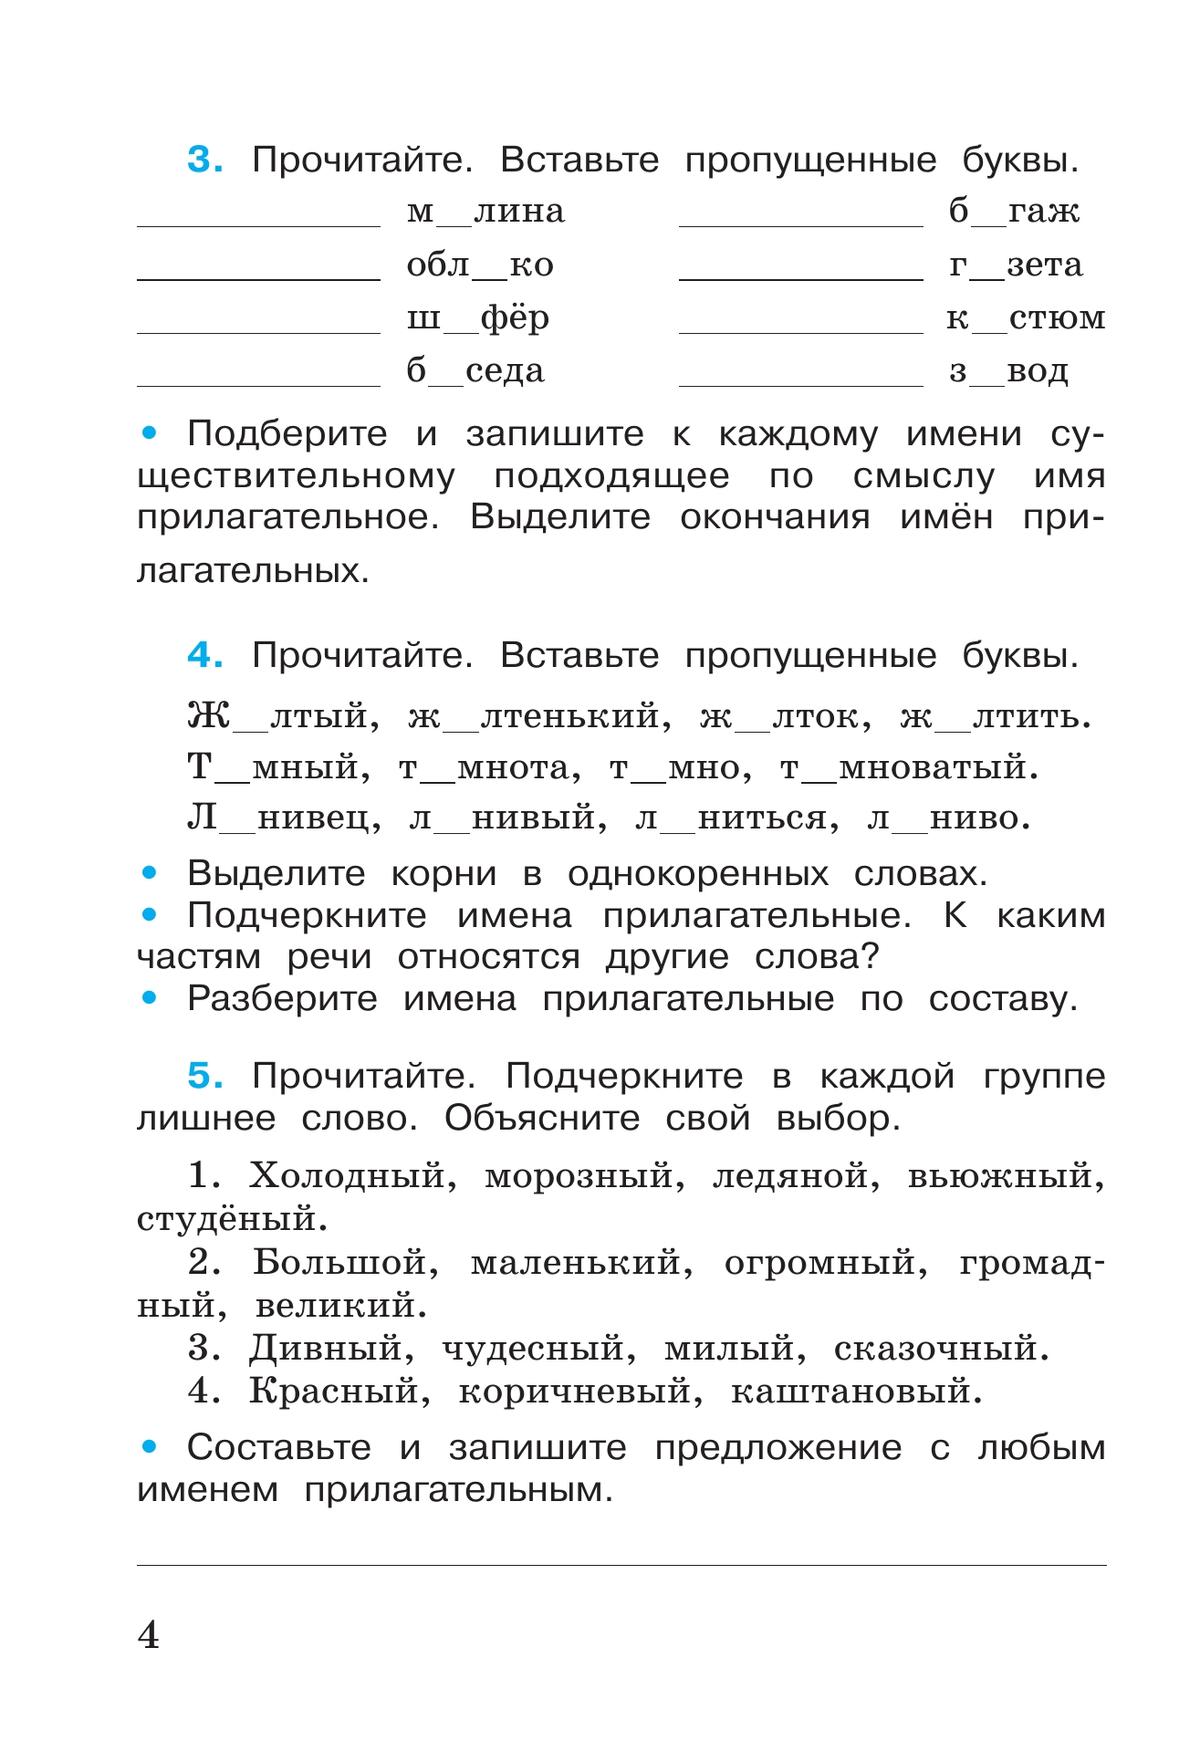 Русский язык. Рабочая тетрадь. 4 класс. В 2 частях. Часть 2 7